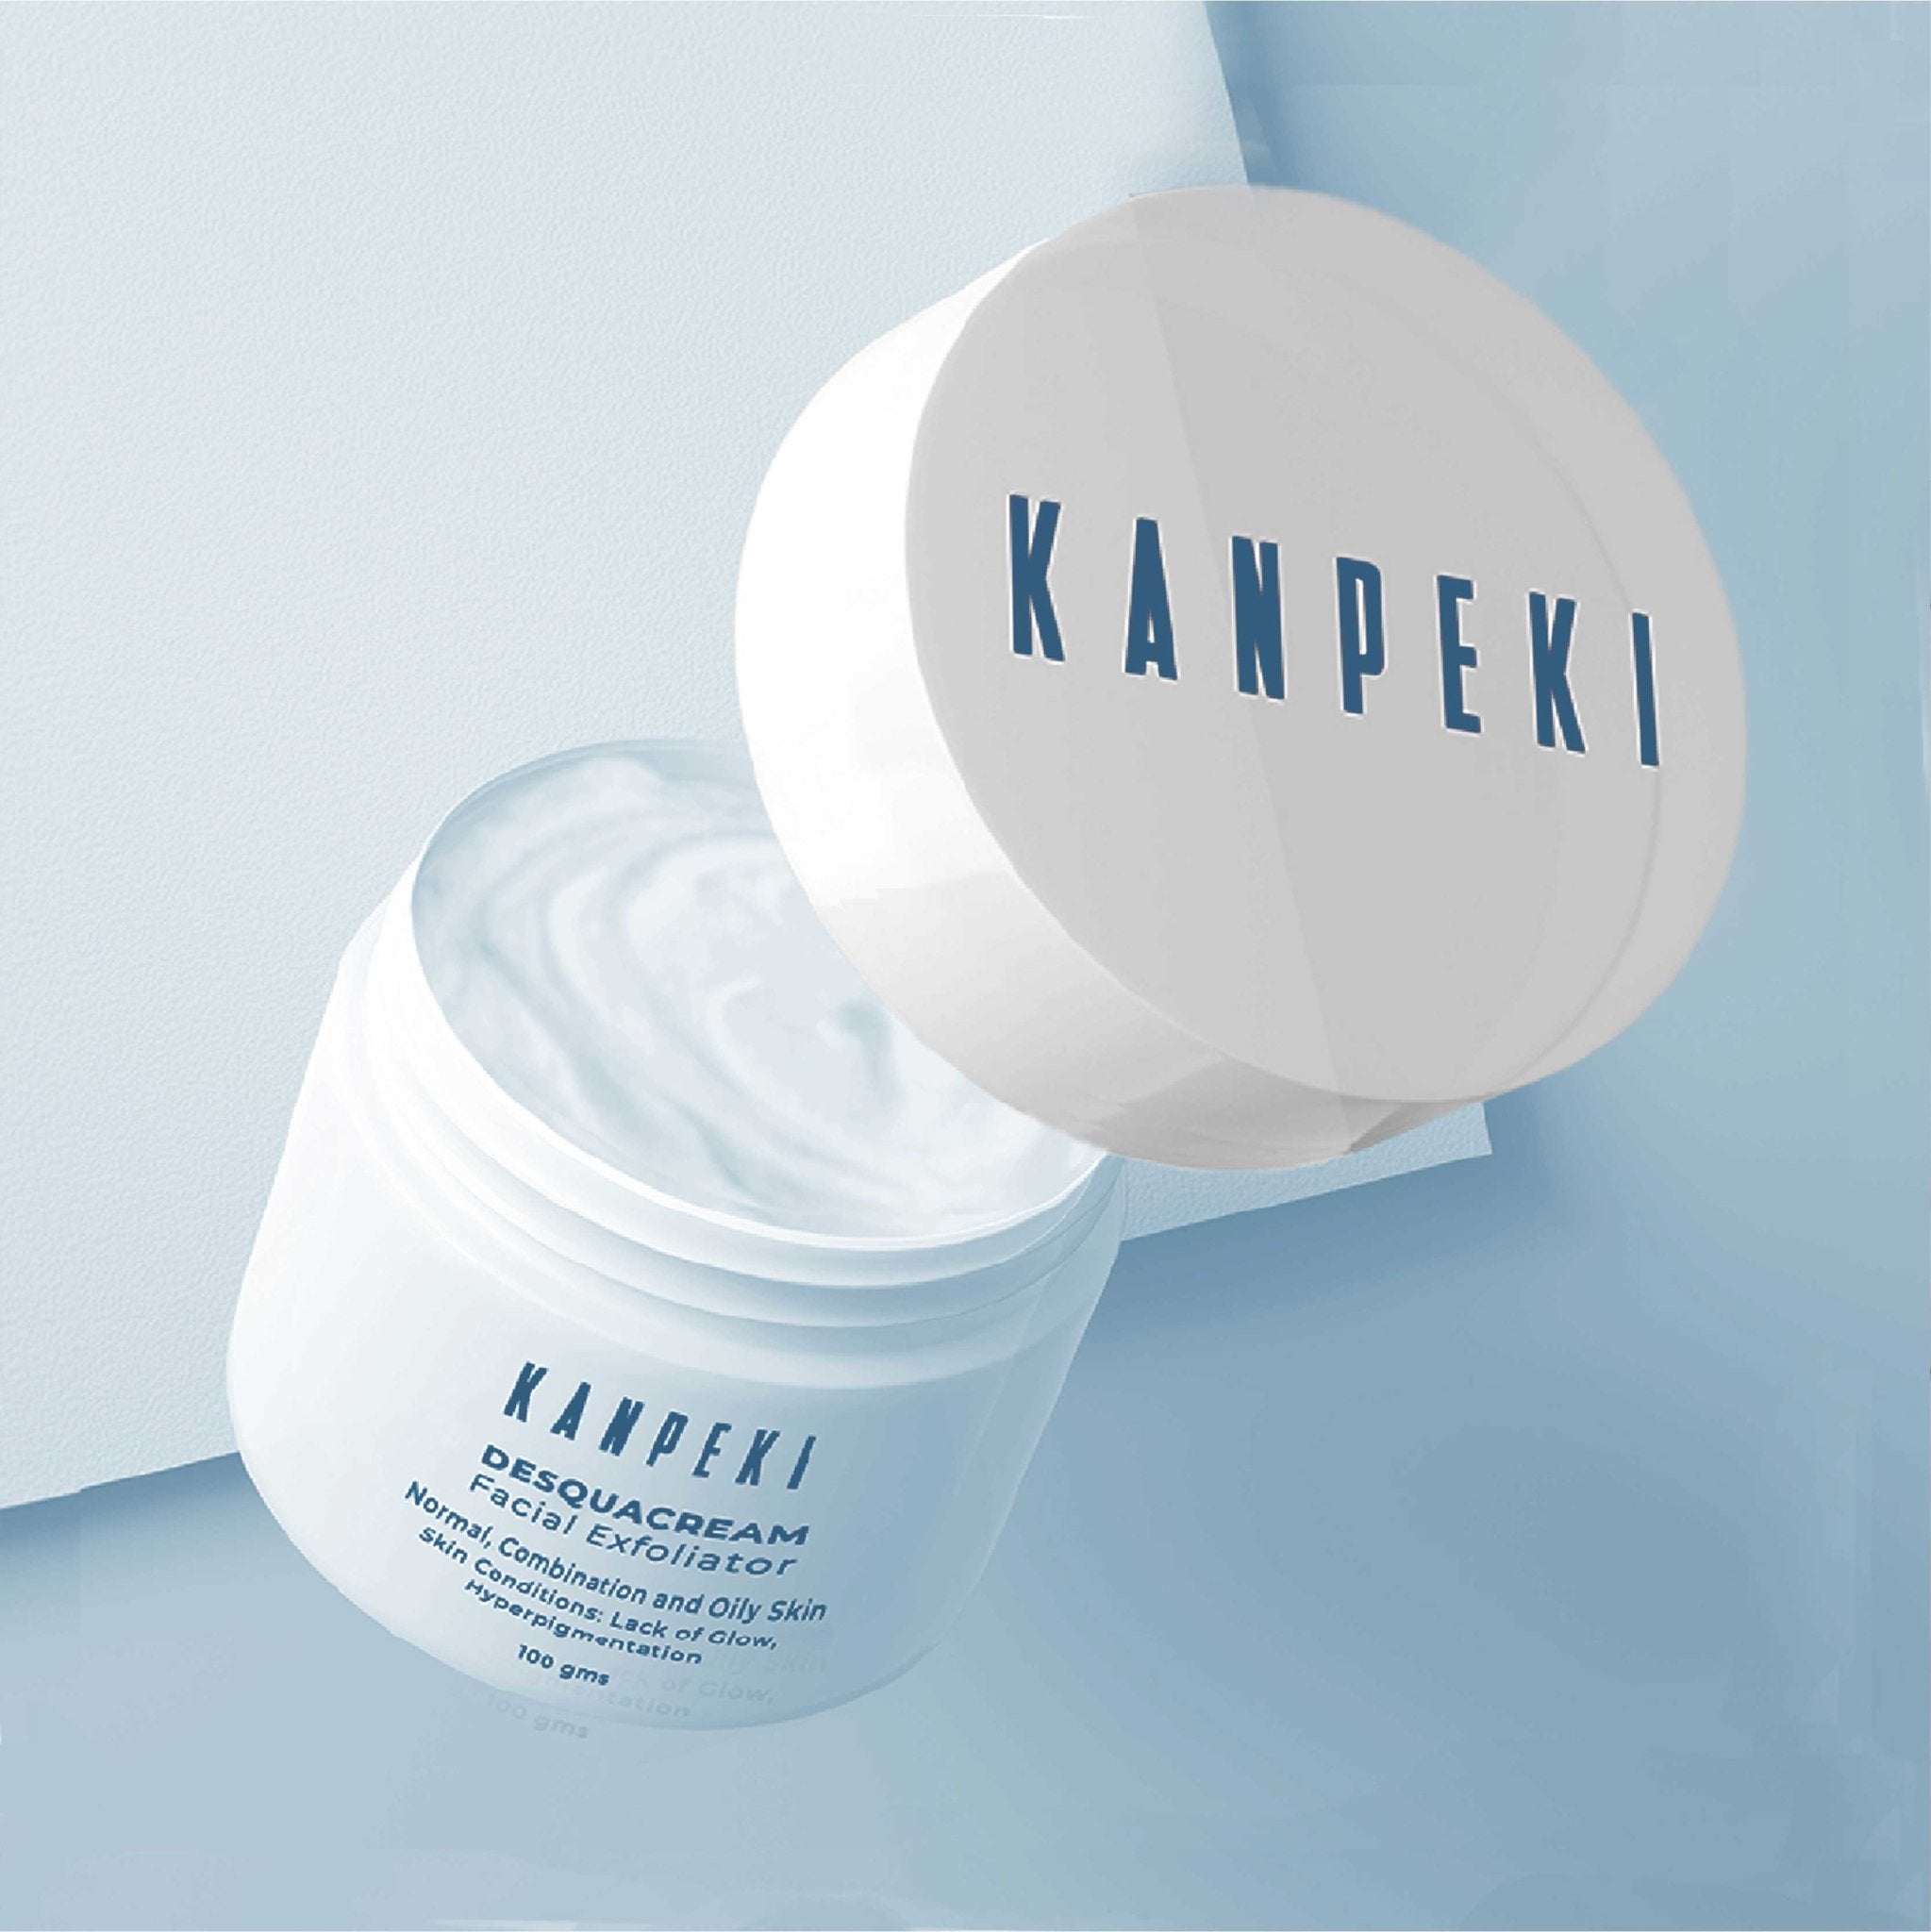 Desquacream Facial Exfoliator,  Kanpeki Skincare